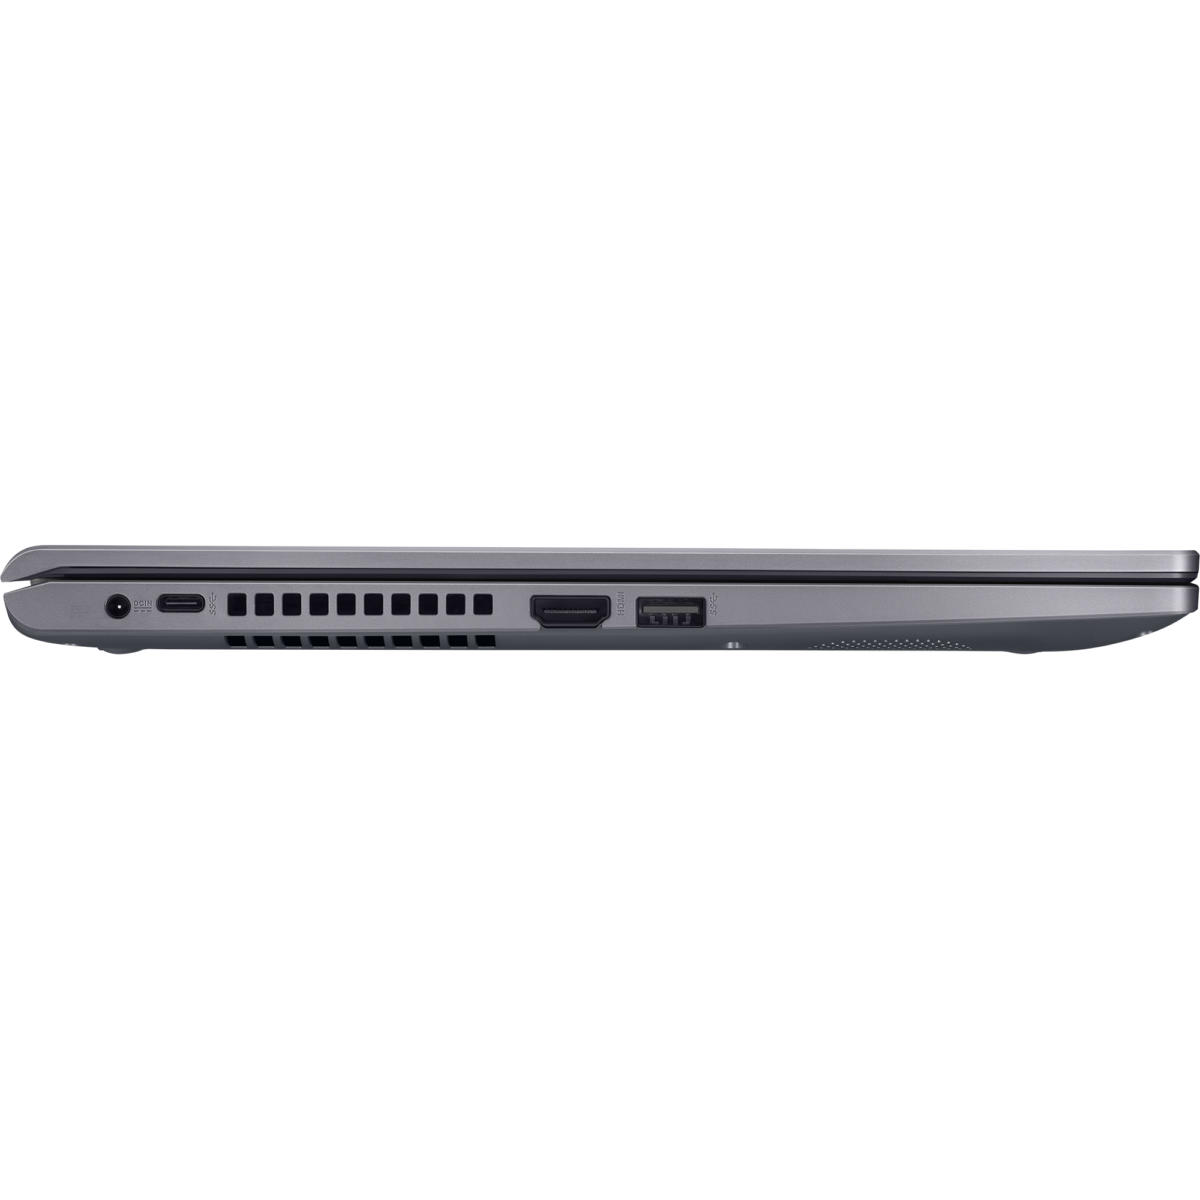 ASUS VivoBook 15 R565EA-US31T 15.6 Laptop